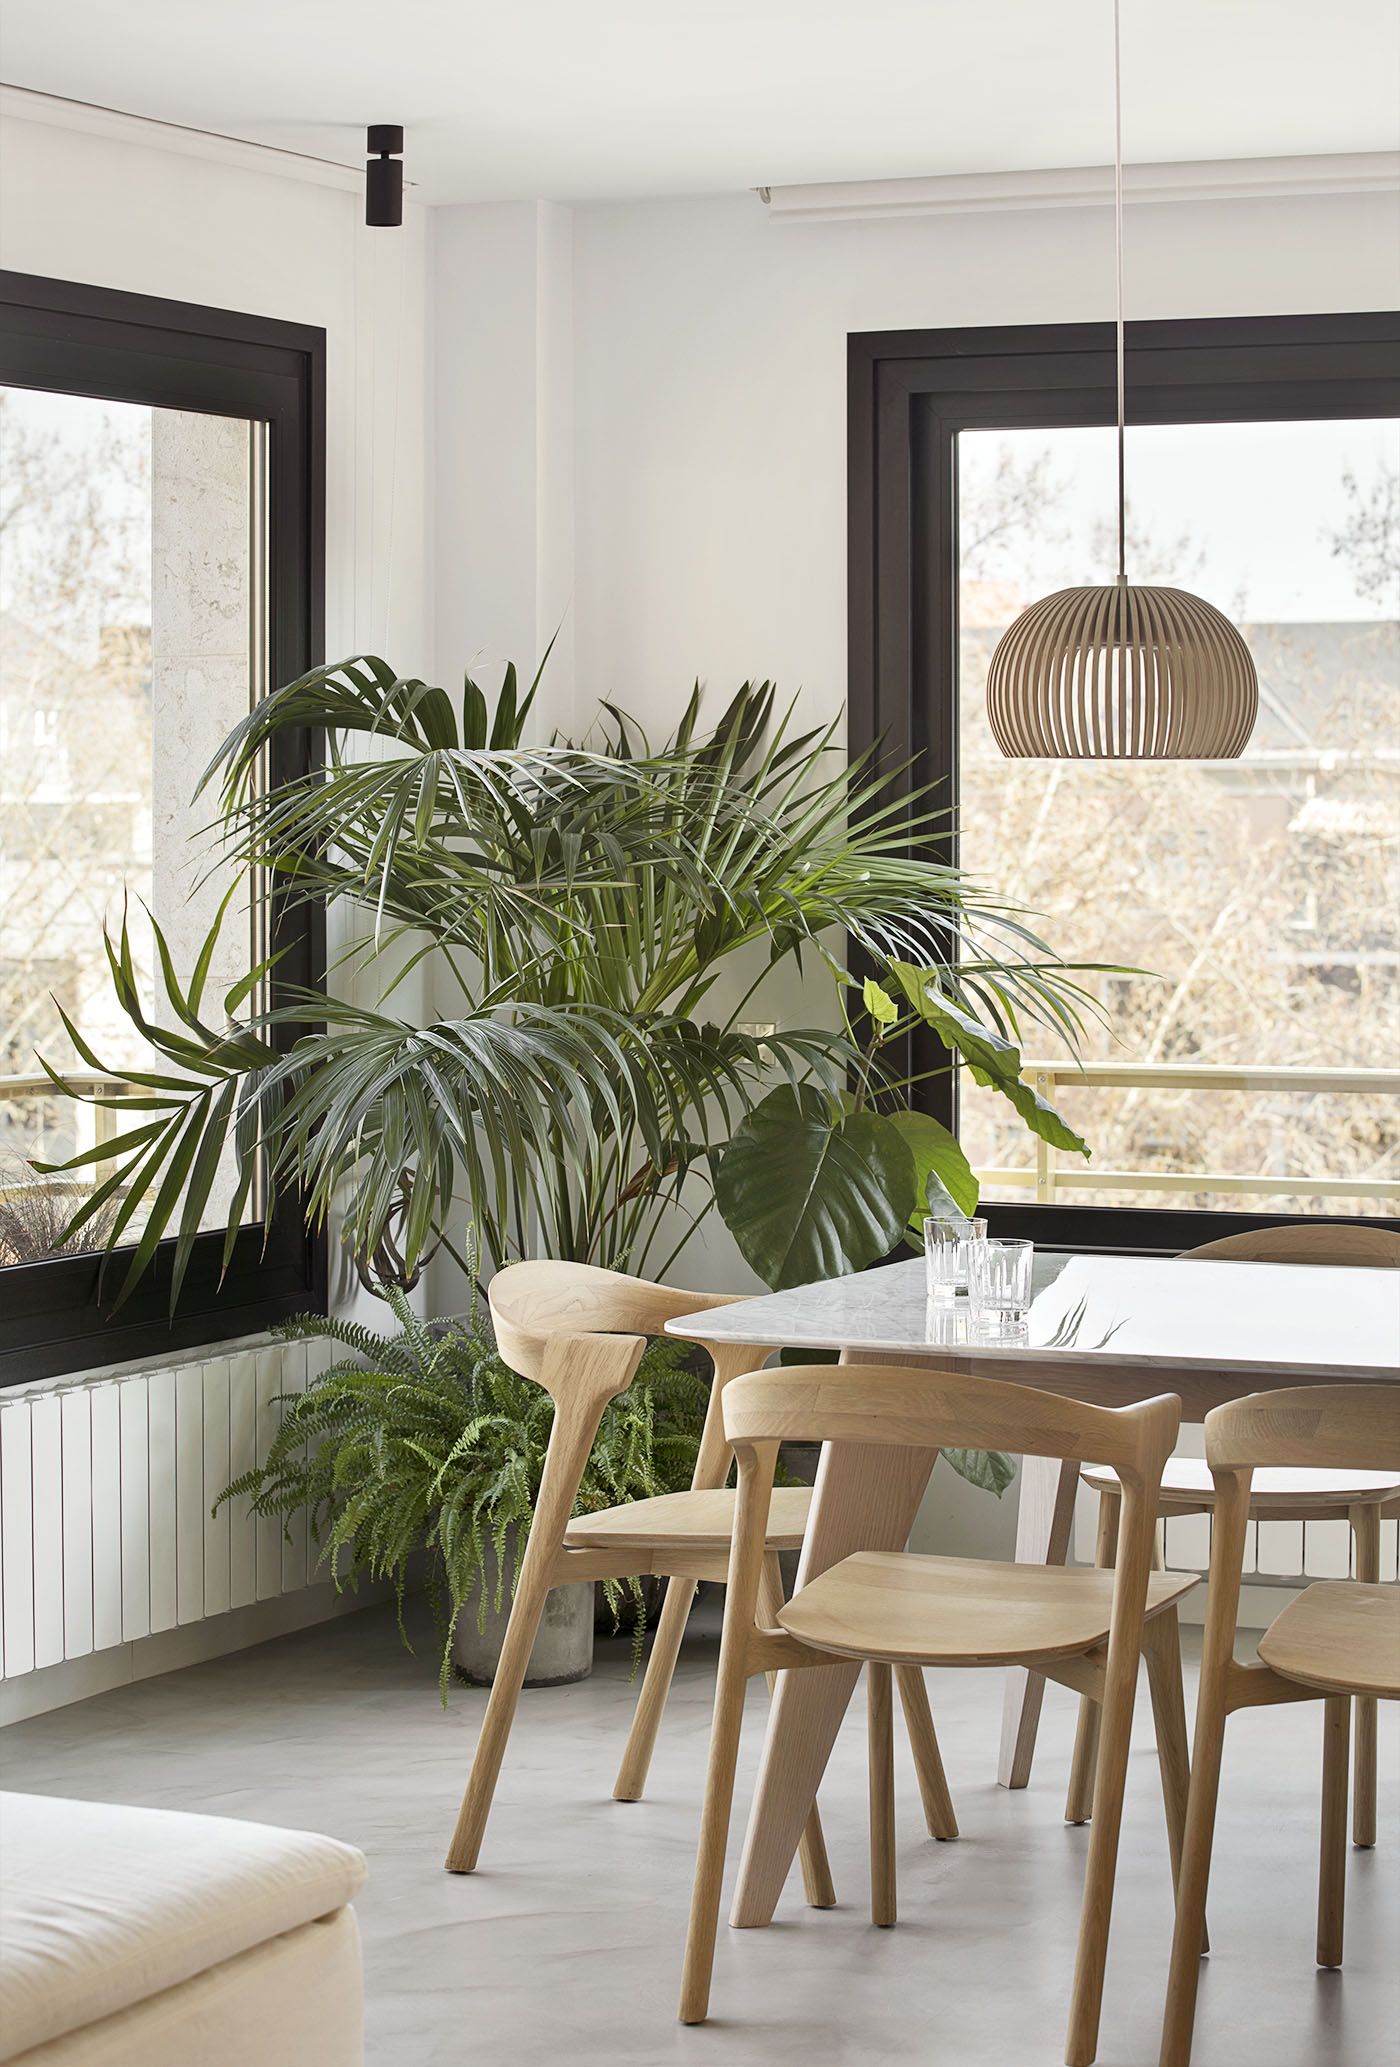 Un salón-comedor decorado con plantas y estilo natural